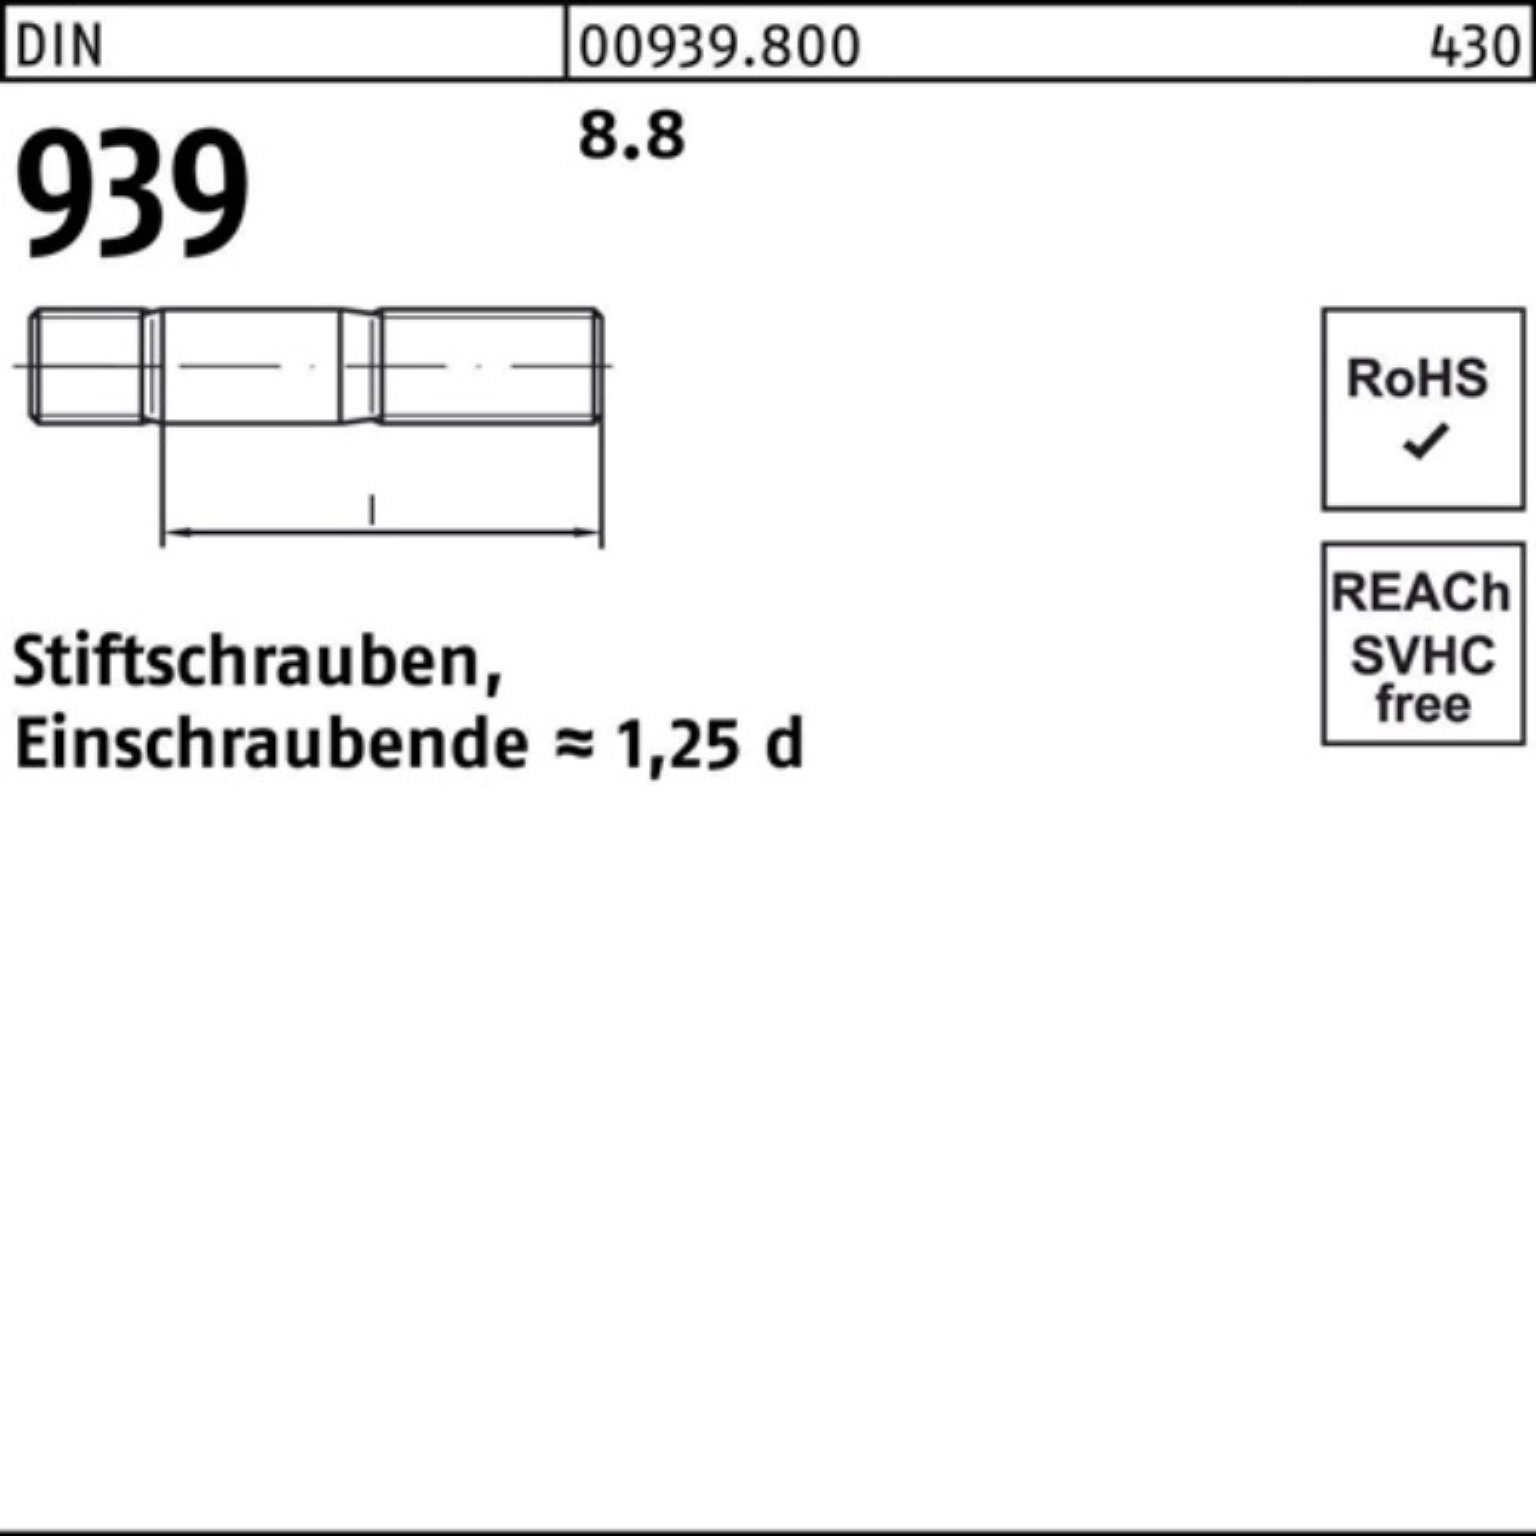 Reyher S 100er 939 M10x Stiftschraube Einschraubende=1,25d 8.8 50 55 Stiftschraube DIN Pack